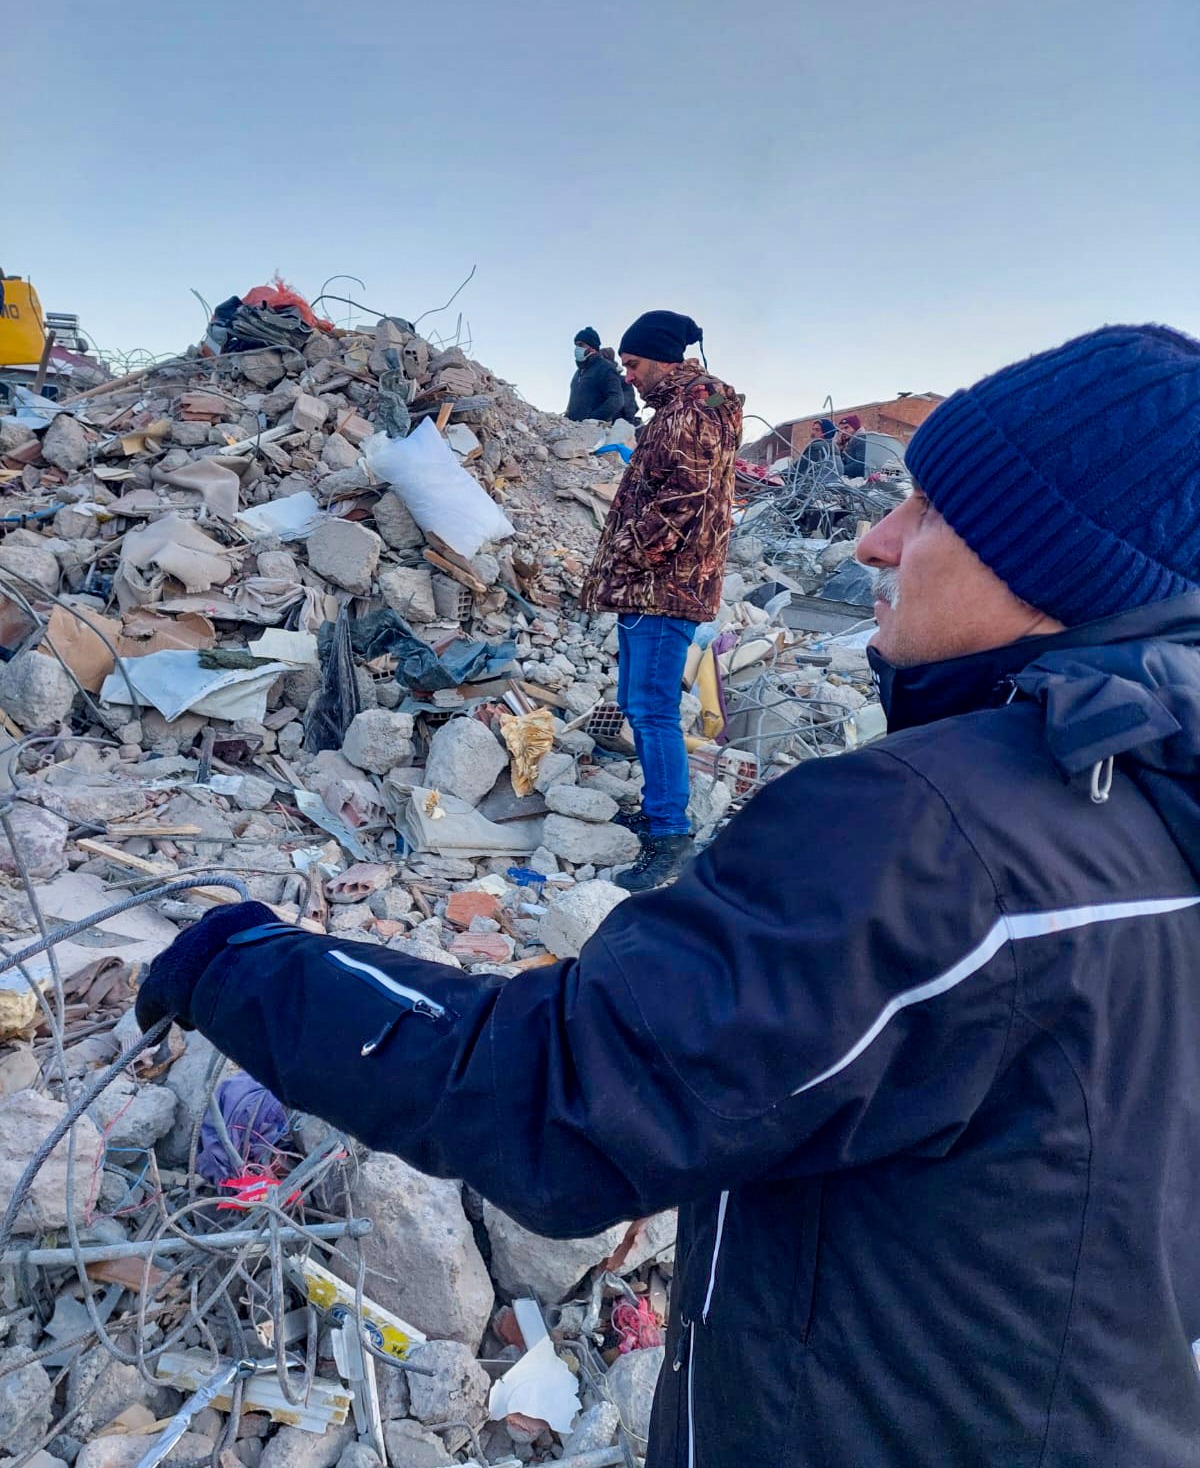 Başkan Zorluoğlu Maraş'ta depremzedelerle yakından ilgileniyor